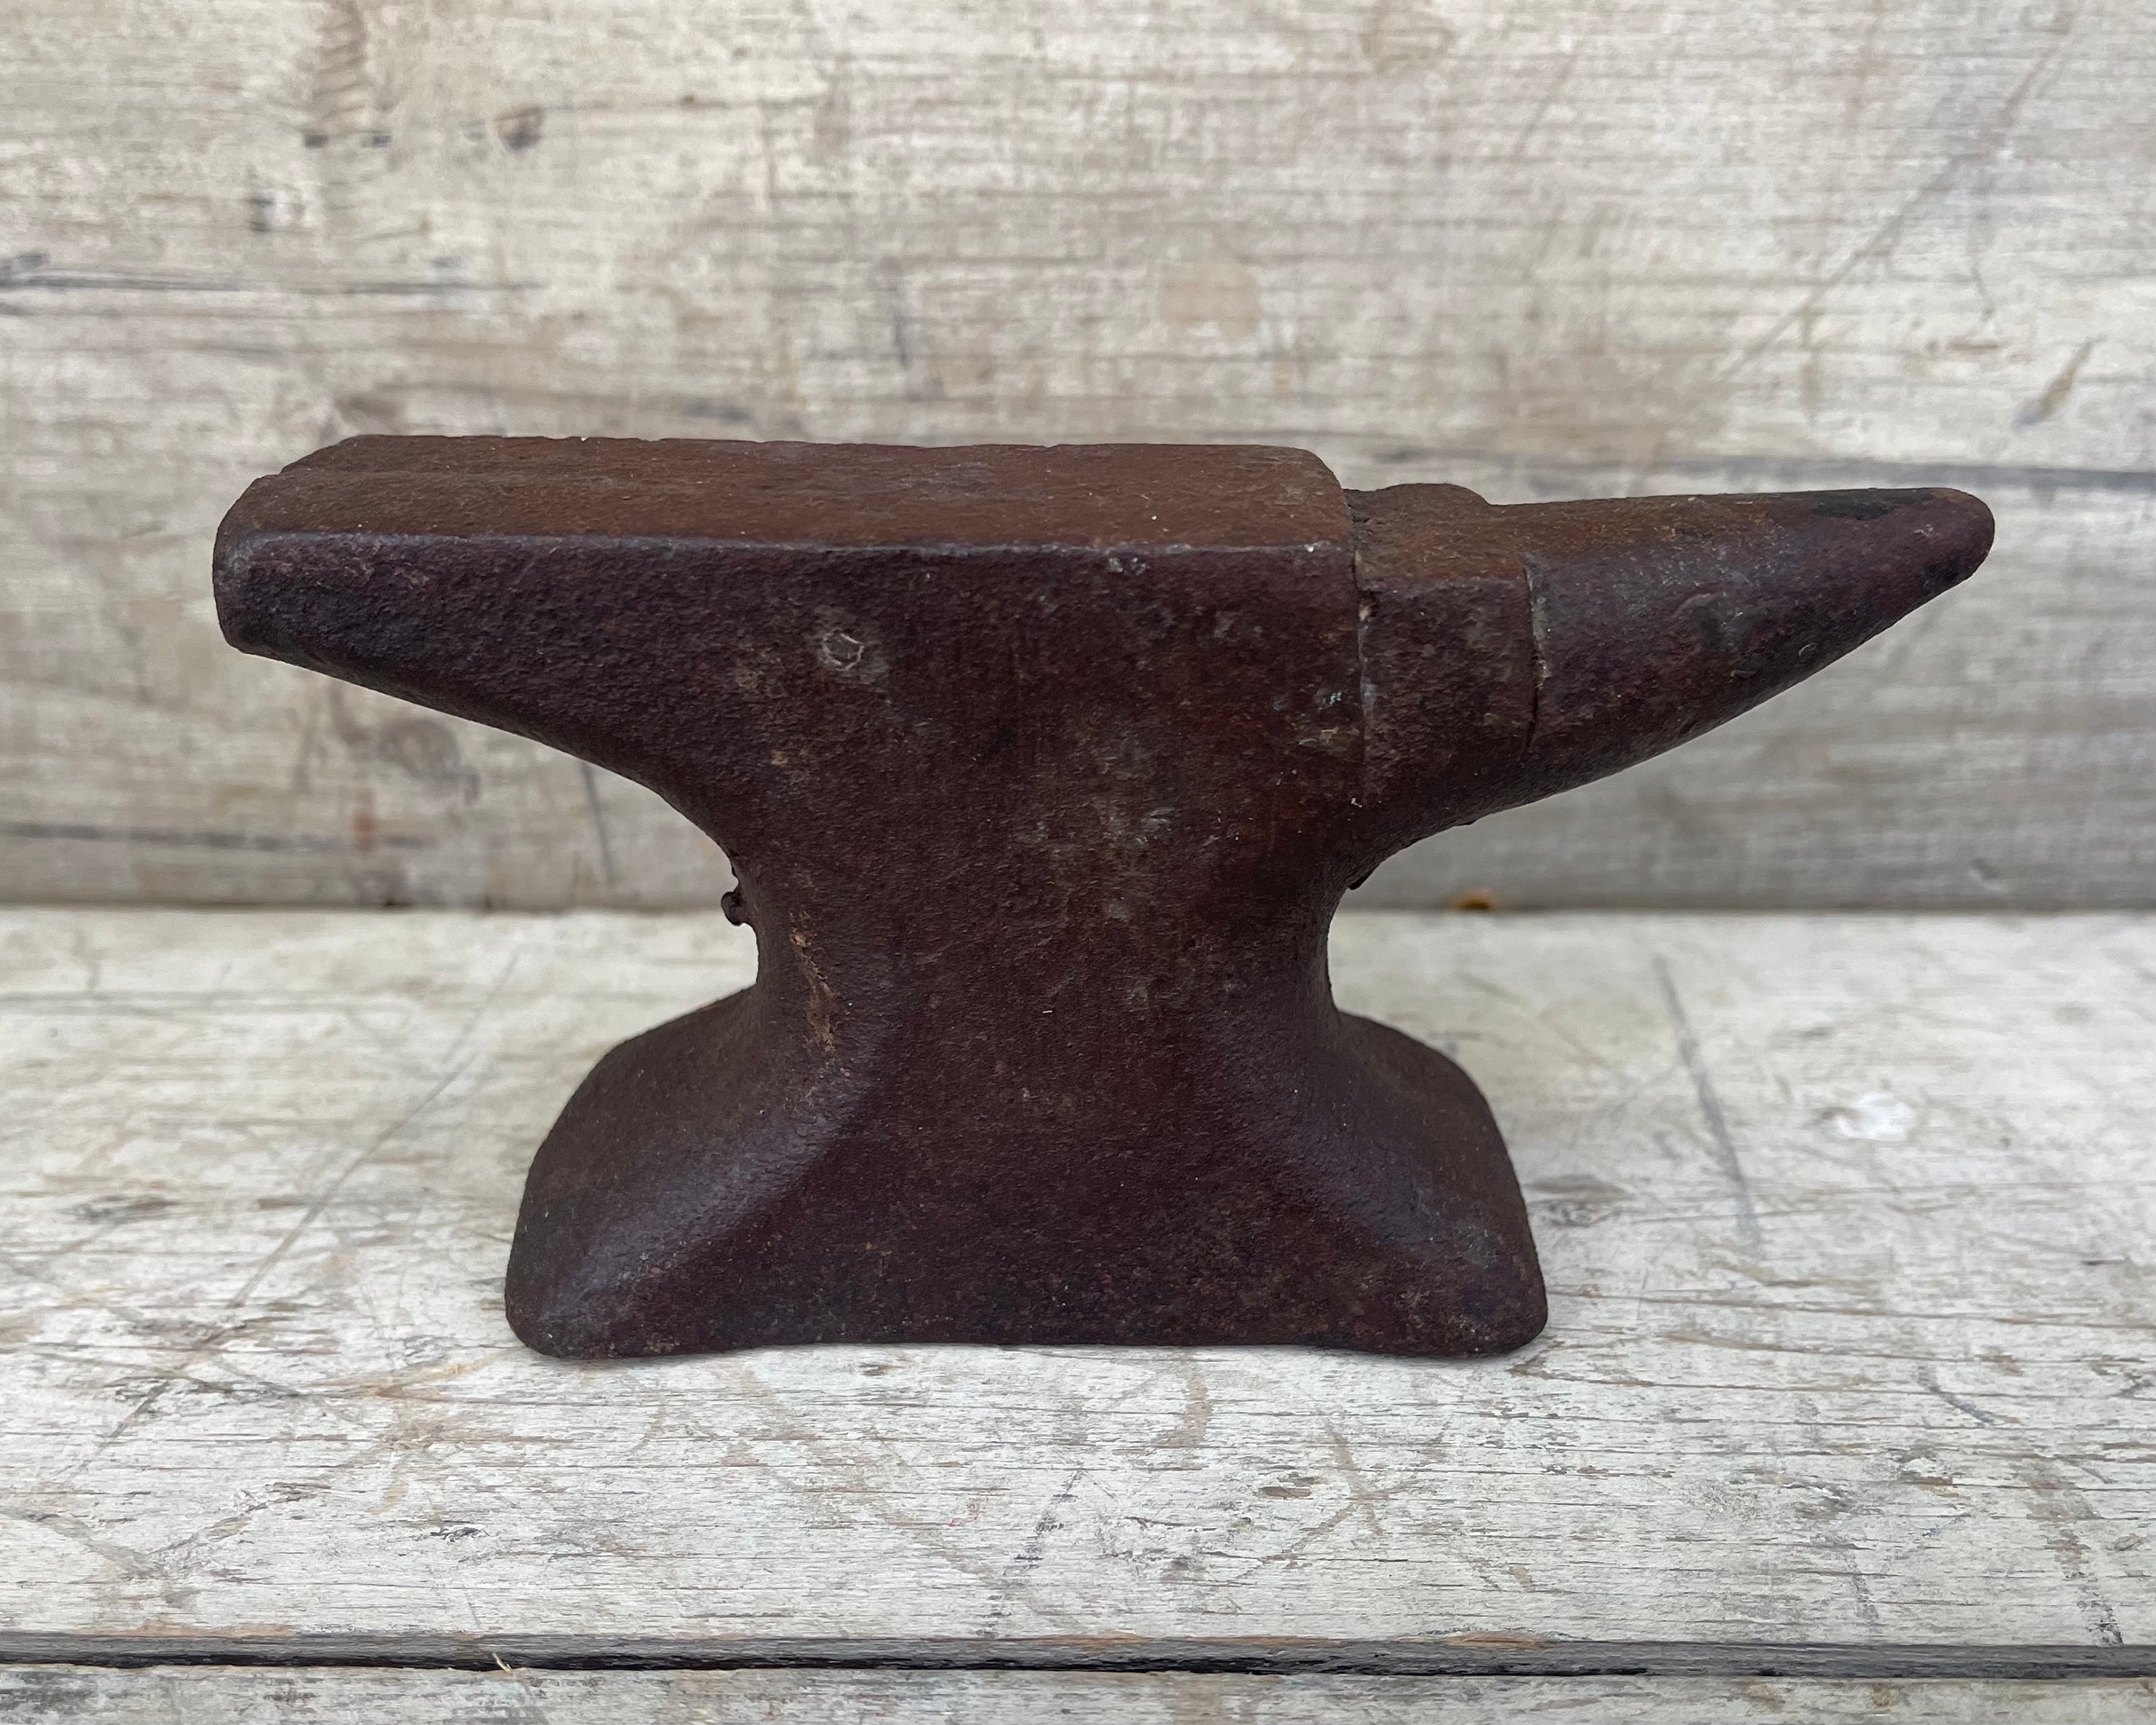 Yunque, yunque de hierro fundido antiguo, 3 libras de yunque